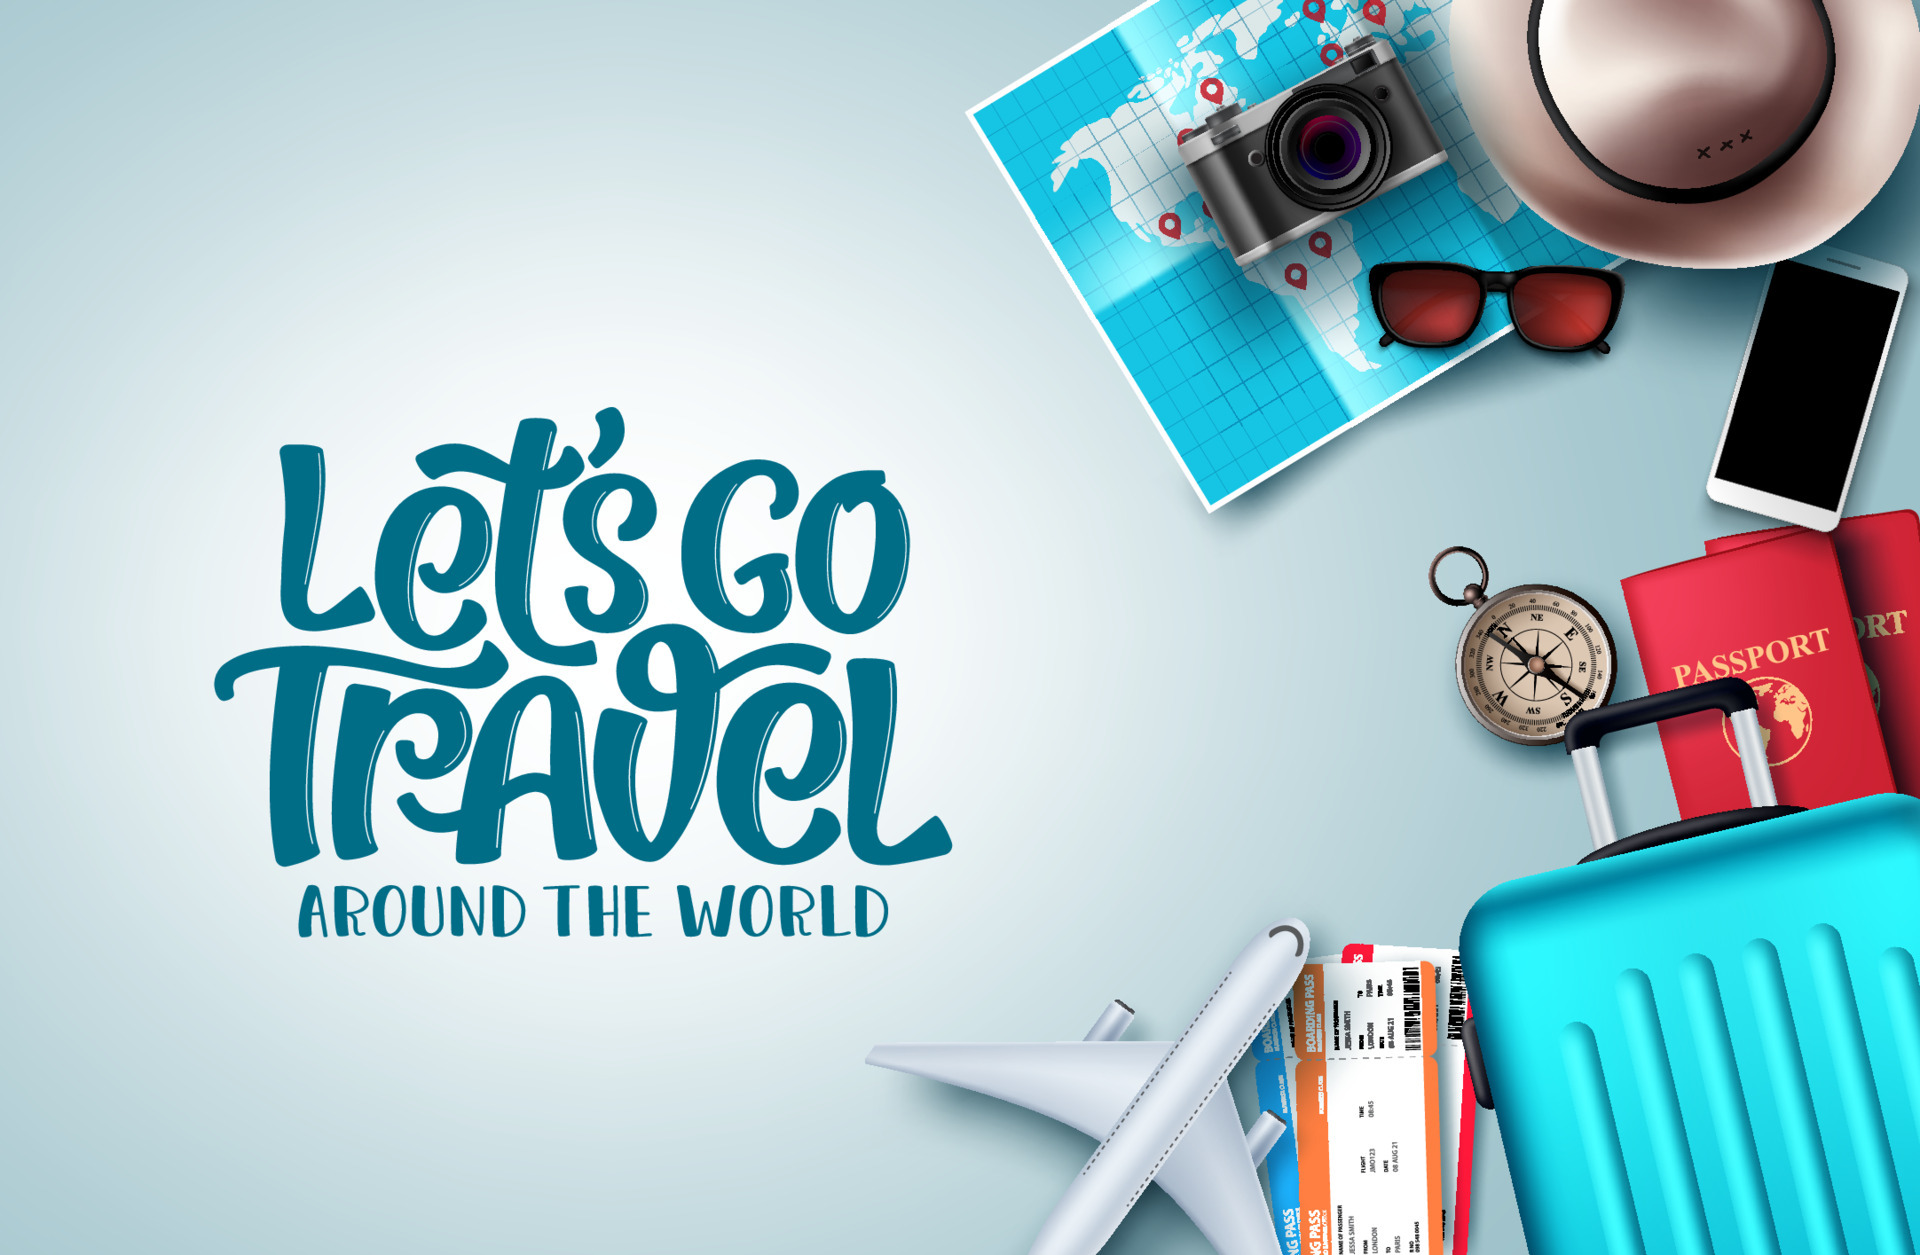 Thiết kế nền tảng vector Let\'s Go Travel là một lựa chọn hoàn hảo cho những người yêu thích du lịch. Các hình ảnh được thiết kế rất đa dạng và sáng tạo, giúp bạn tạo ra một cuộc phiêu lưu đầy thú vị. Hãy để hình ảnh này kích thích sự sáng tạo của bạn và mang đến những trải nghiệm tuyệt vời nhất cho du khách của mình!